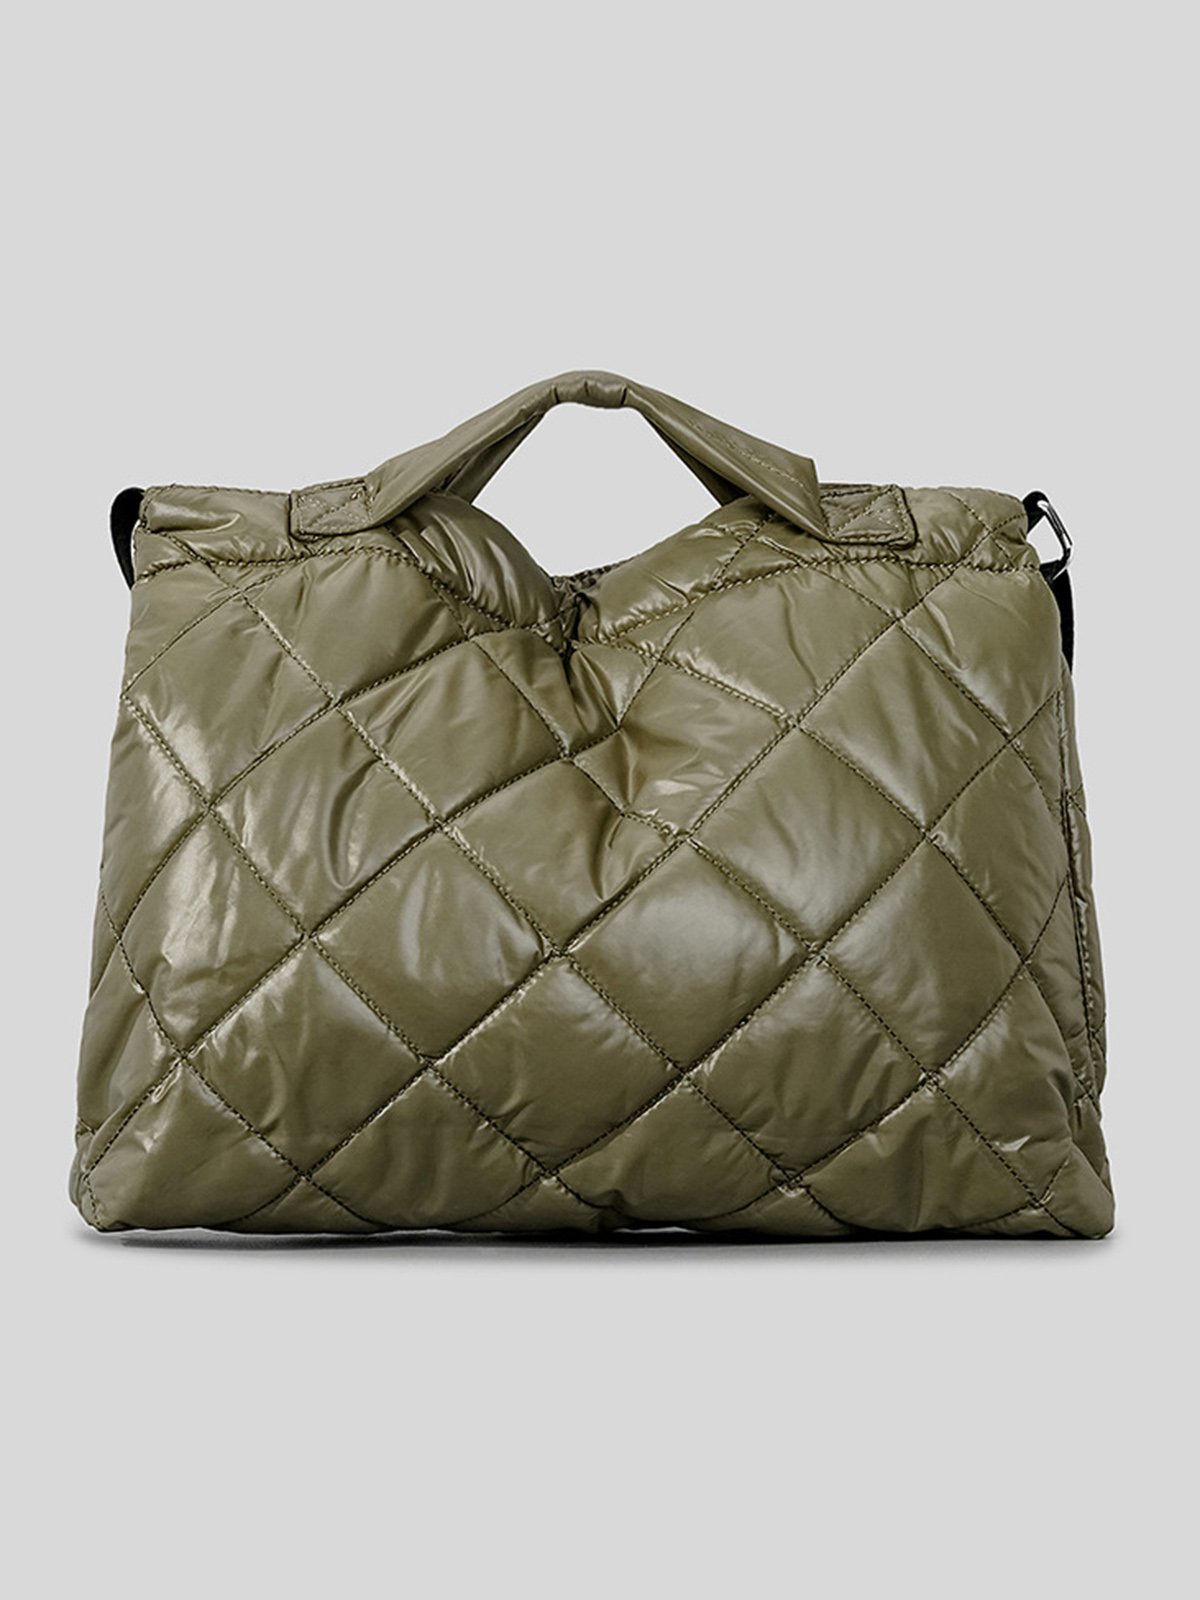 Large Capacity Rhombus Shoulder Bag Nylon Crossbody Tote Bag